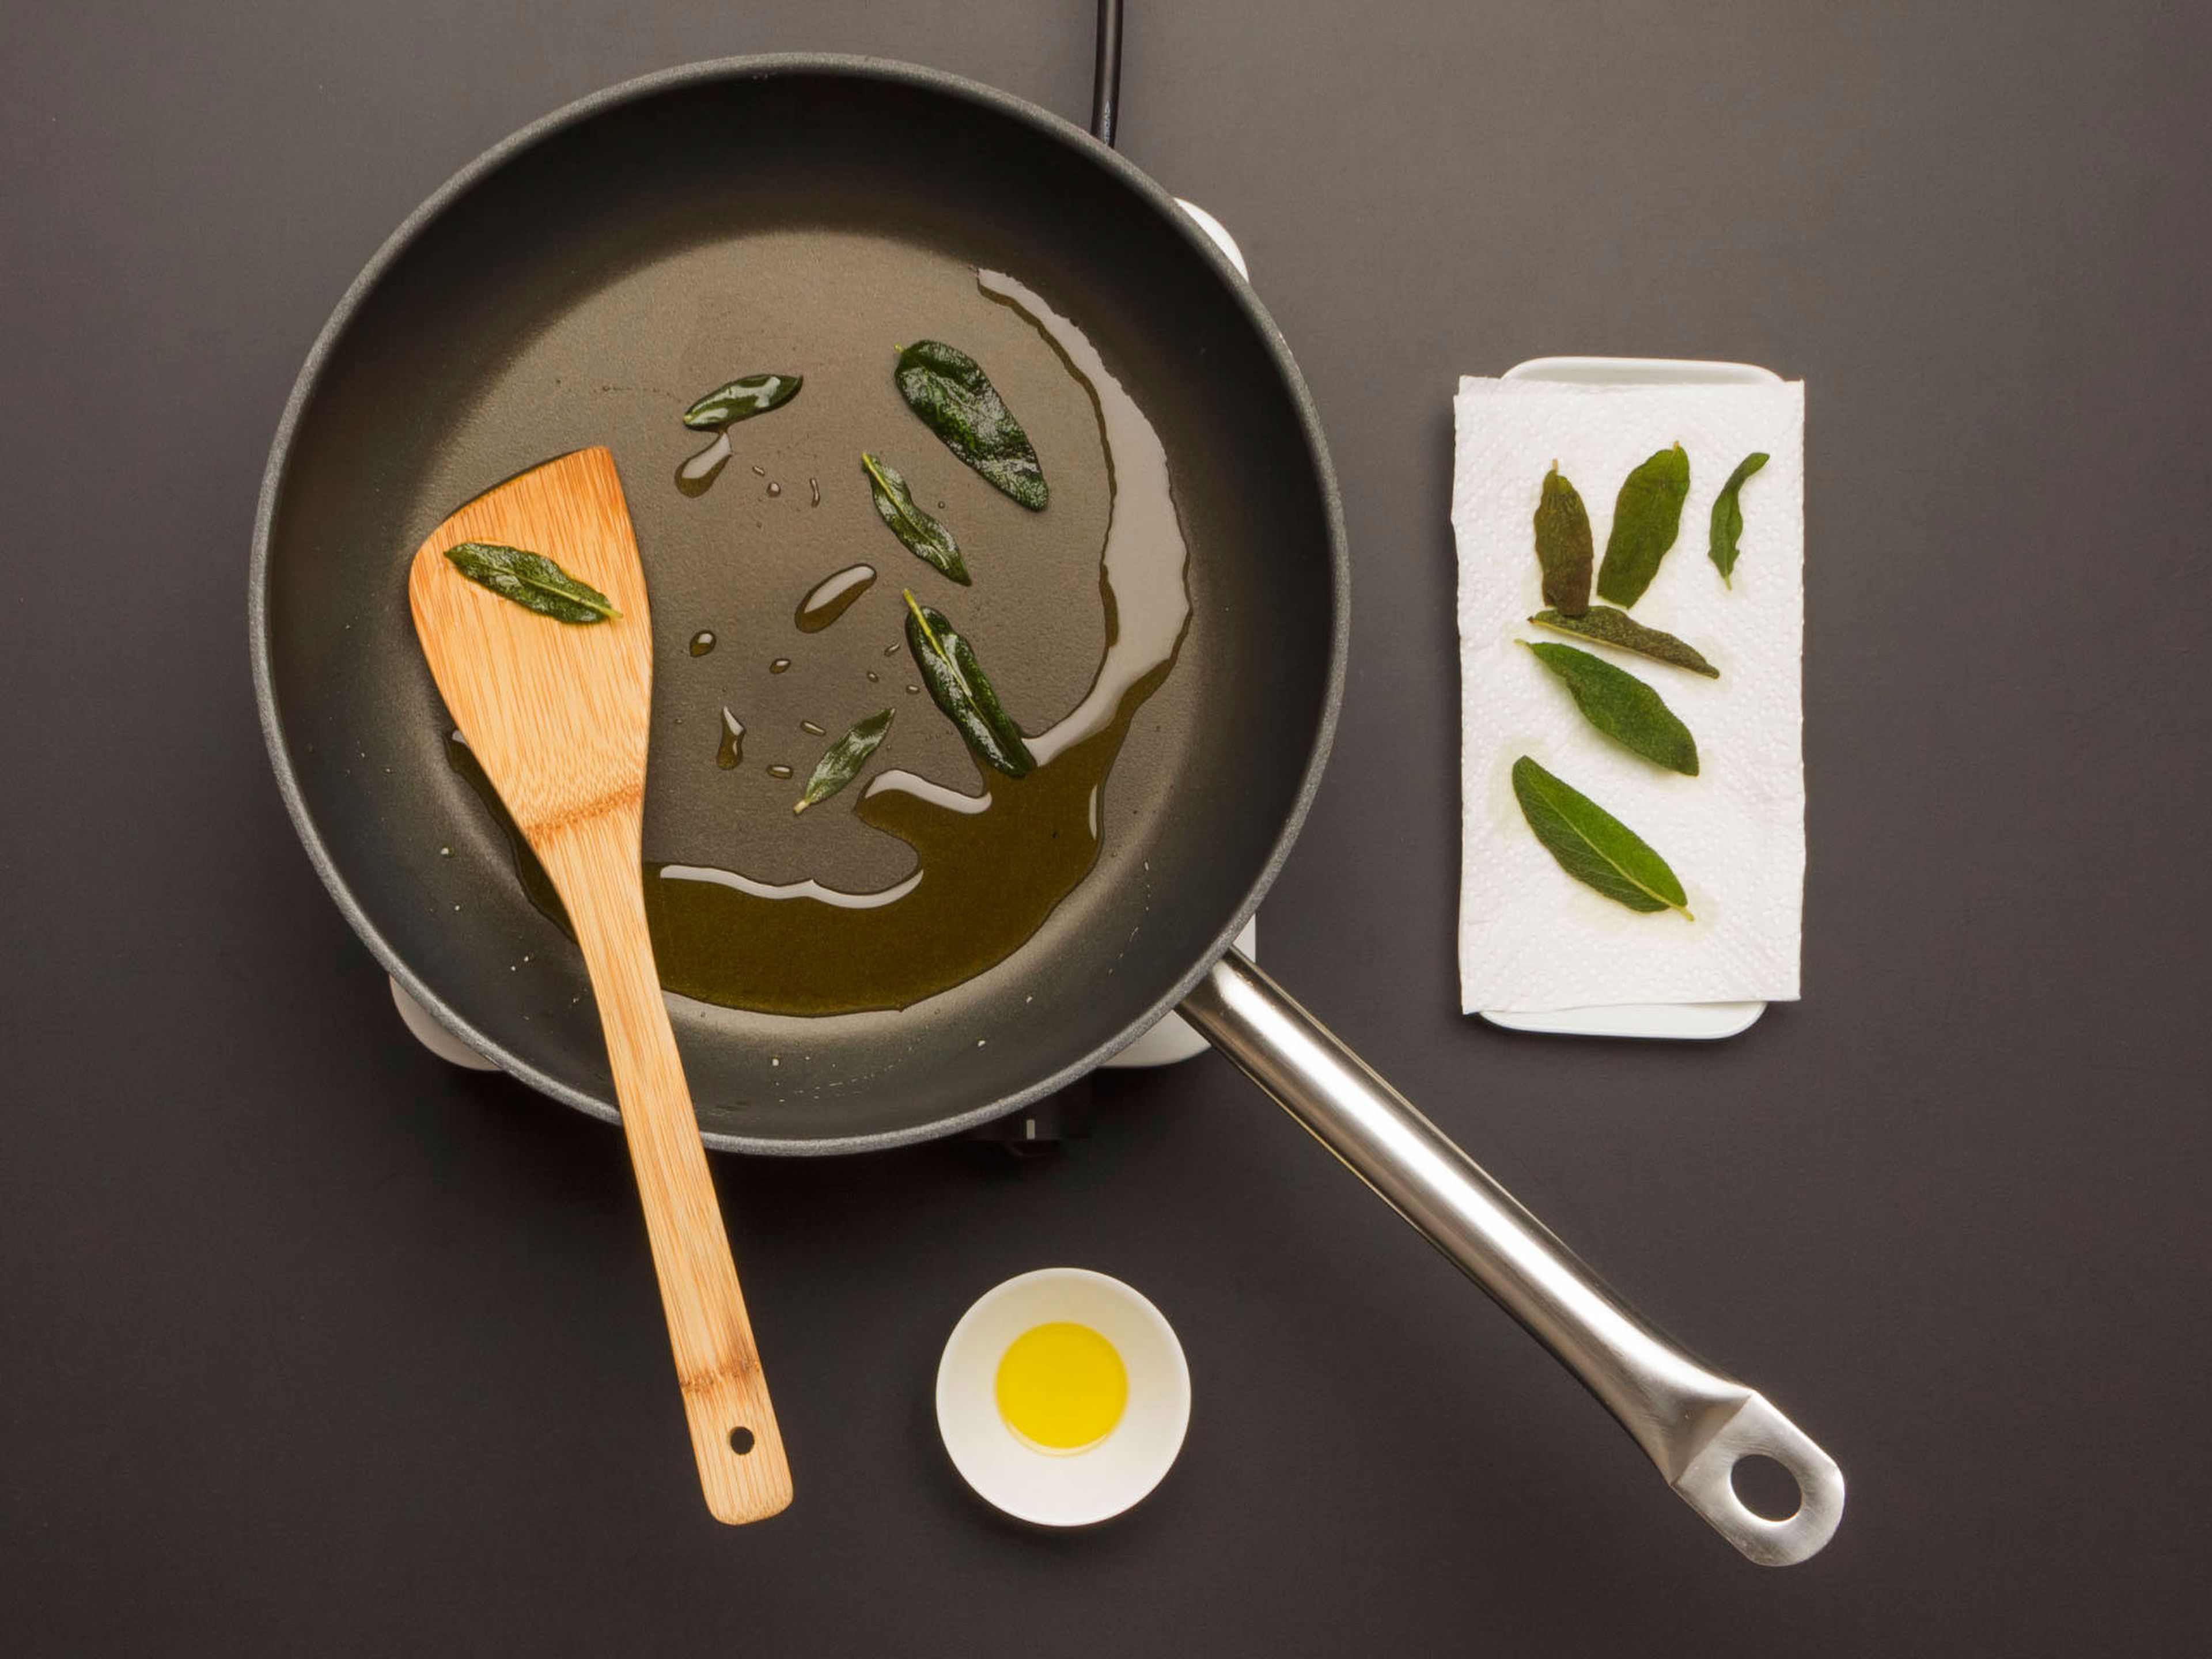 Olivenöl in einer großen Pfanne erhitzen. Salbeiblätter darin ca. 1 Min. frittieren, bis sie knusprig sind. Aufpassen, dass die Blätter nicht anbrennen! Zum Abtropfen auf einen mit Küchenpapier ausgelegten Teller geben. Öl in der Pfanne lassen.